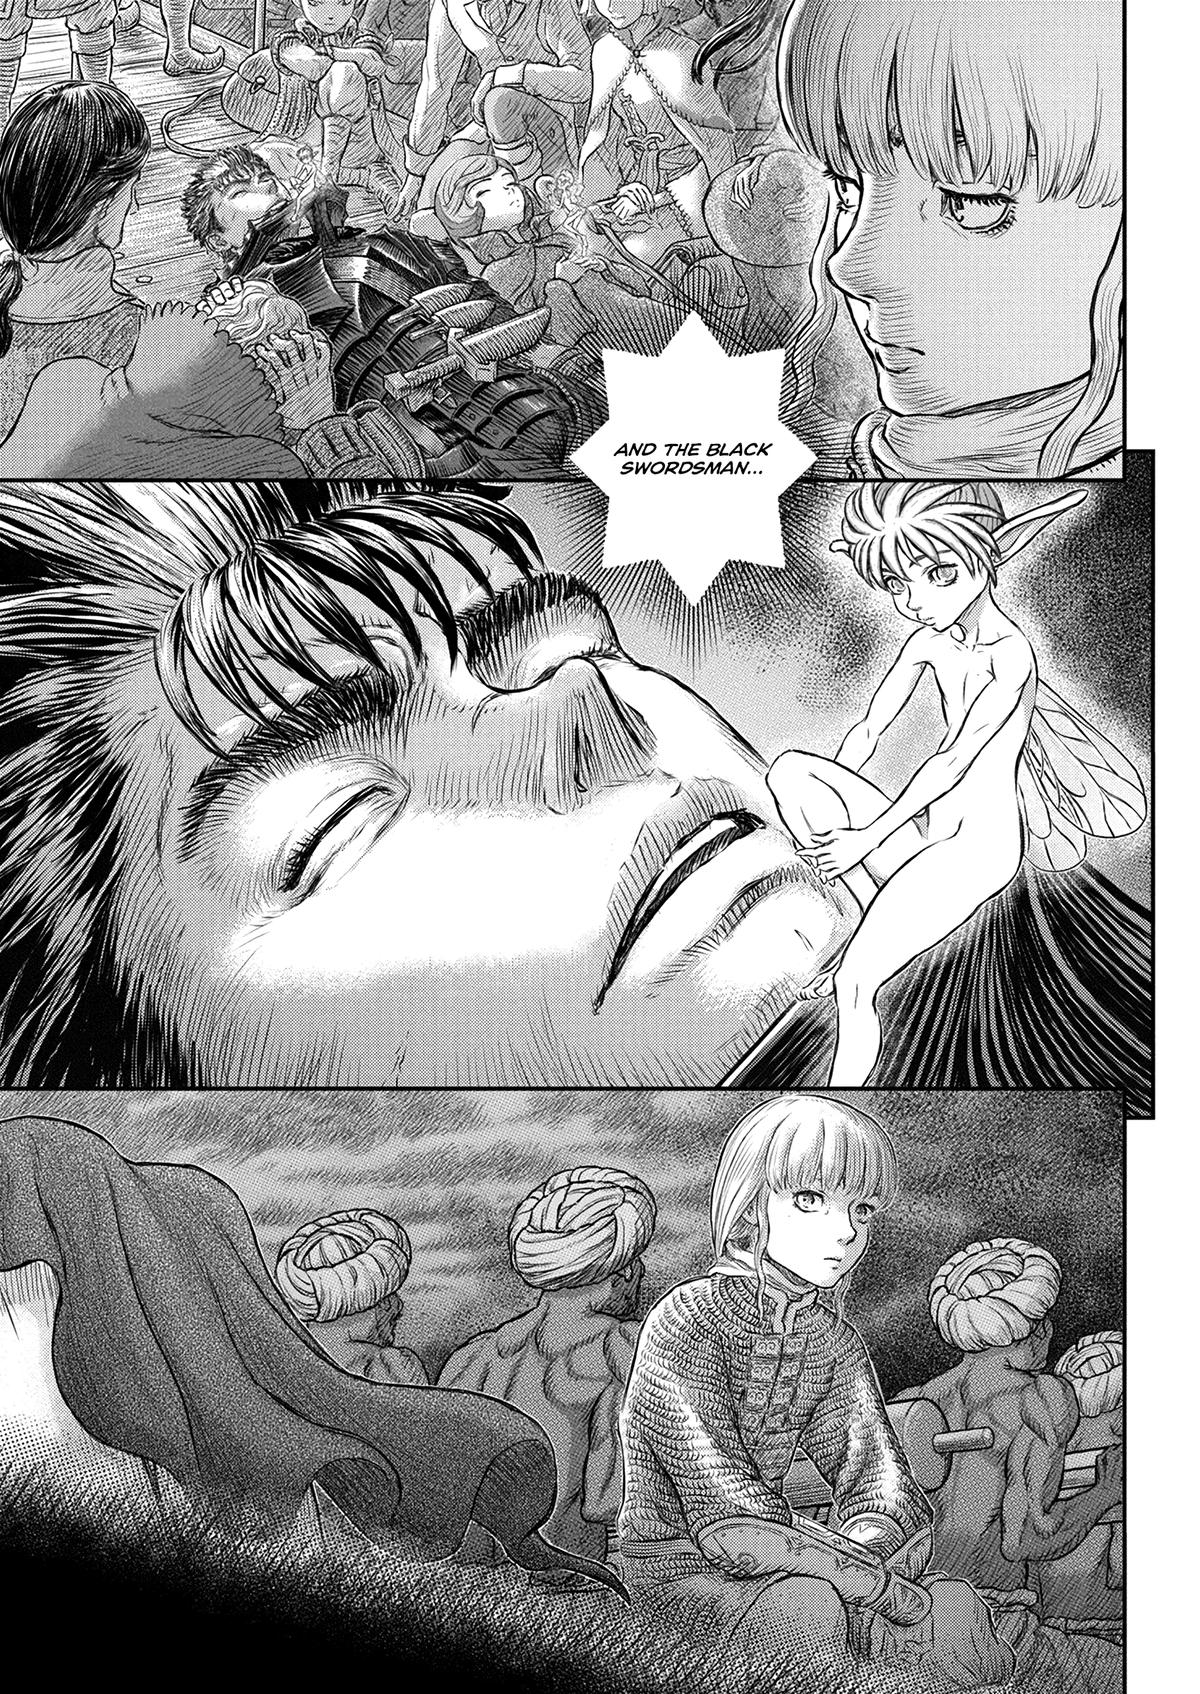 Berserk Manga Chapter 375 image 21